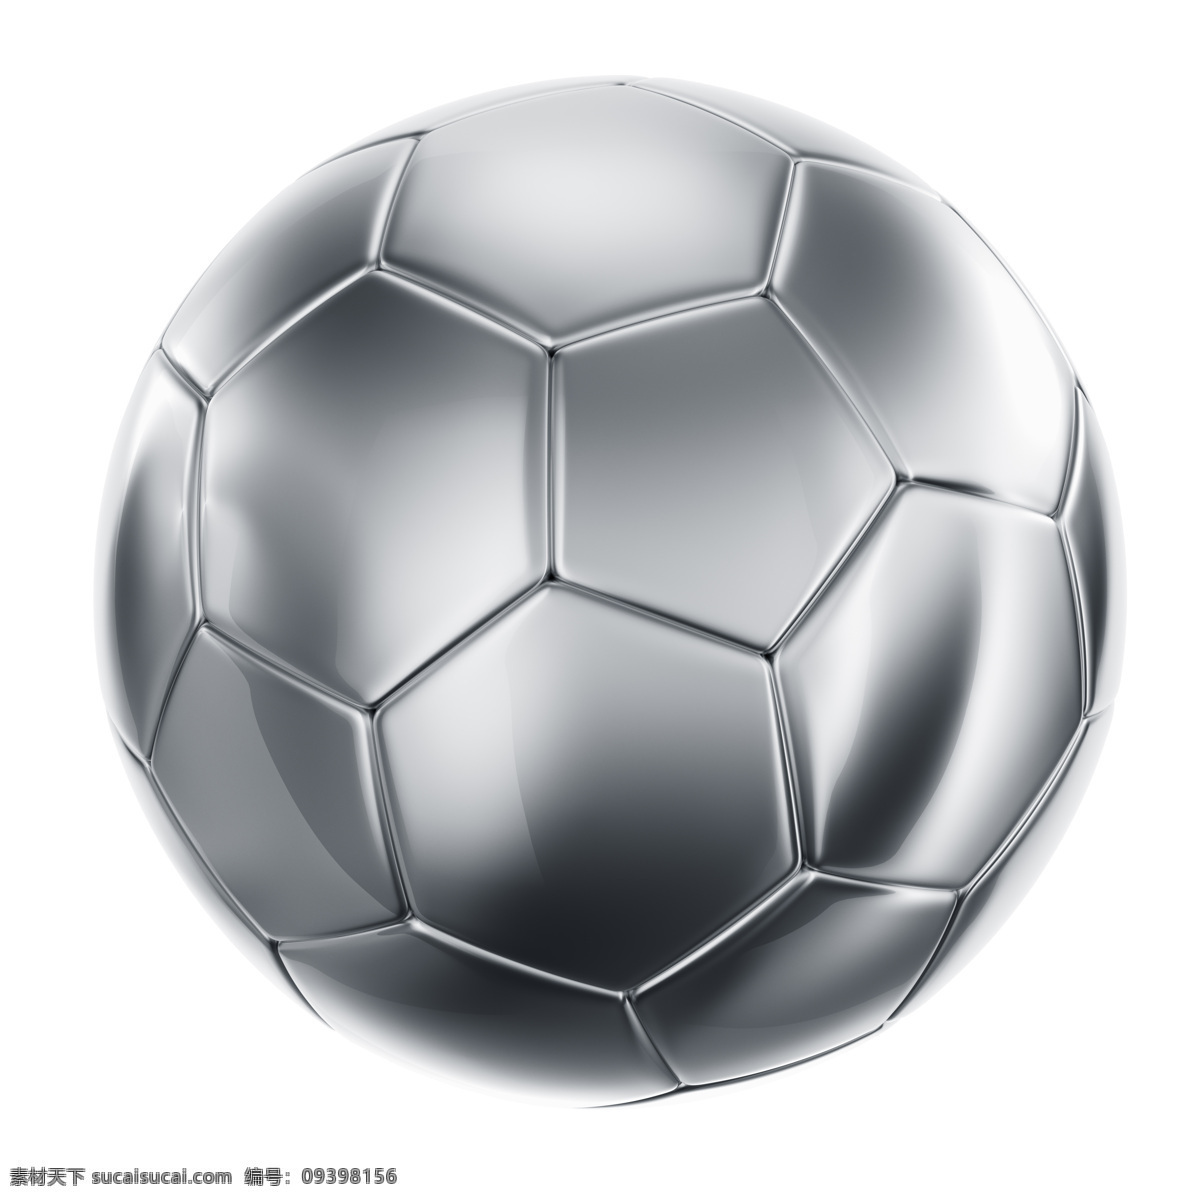 地球 3d 足球 高清 清晰 球 球清晰 地球3d足球 矢量 地球的三维球 自由 载体 矢量矢量足球 矢量图 其他矢量图